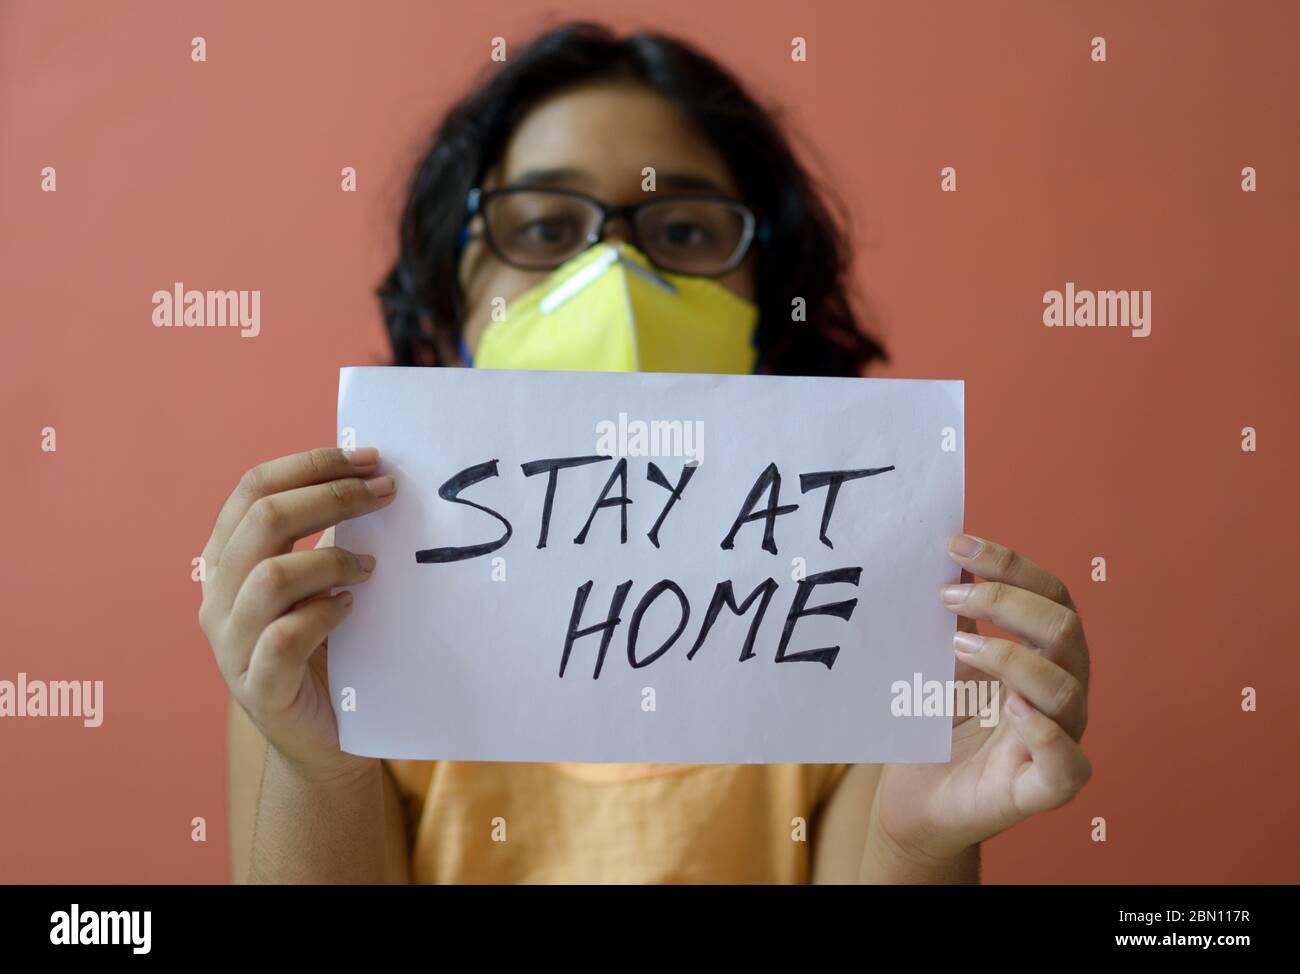 La bambina indiana che indossa la maschera facciale tiene un cartello in mano mostrando un messaggio 'Say at Home' durante la pandemia COVID-19 per mantenere la distanza sociale. Foto Stock